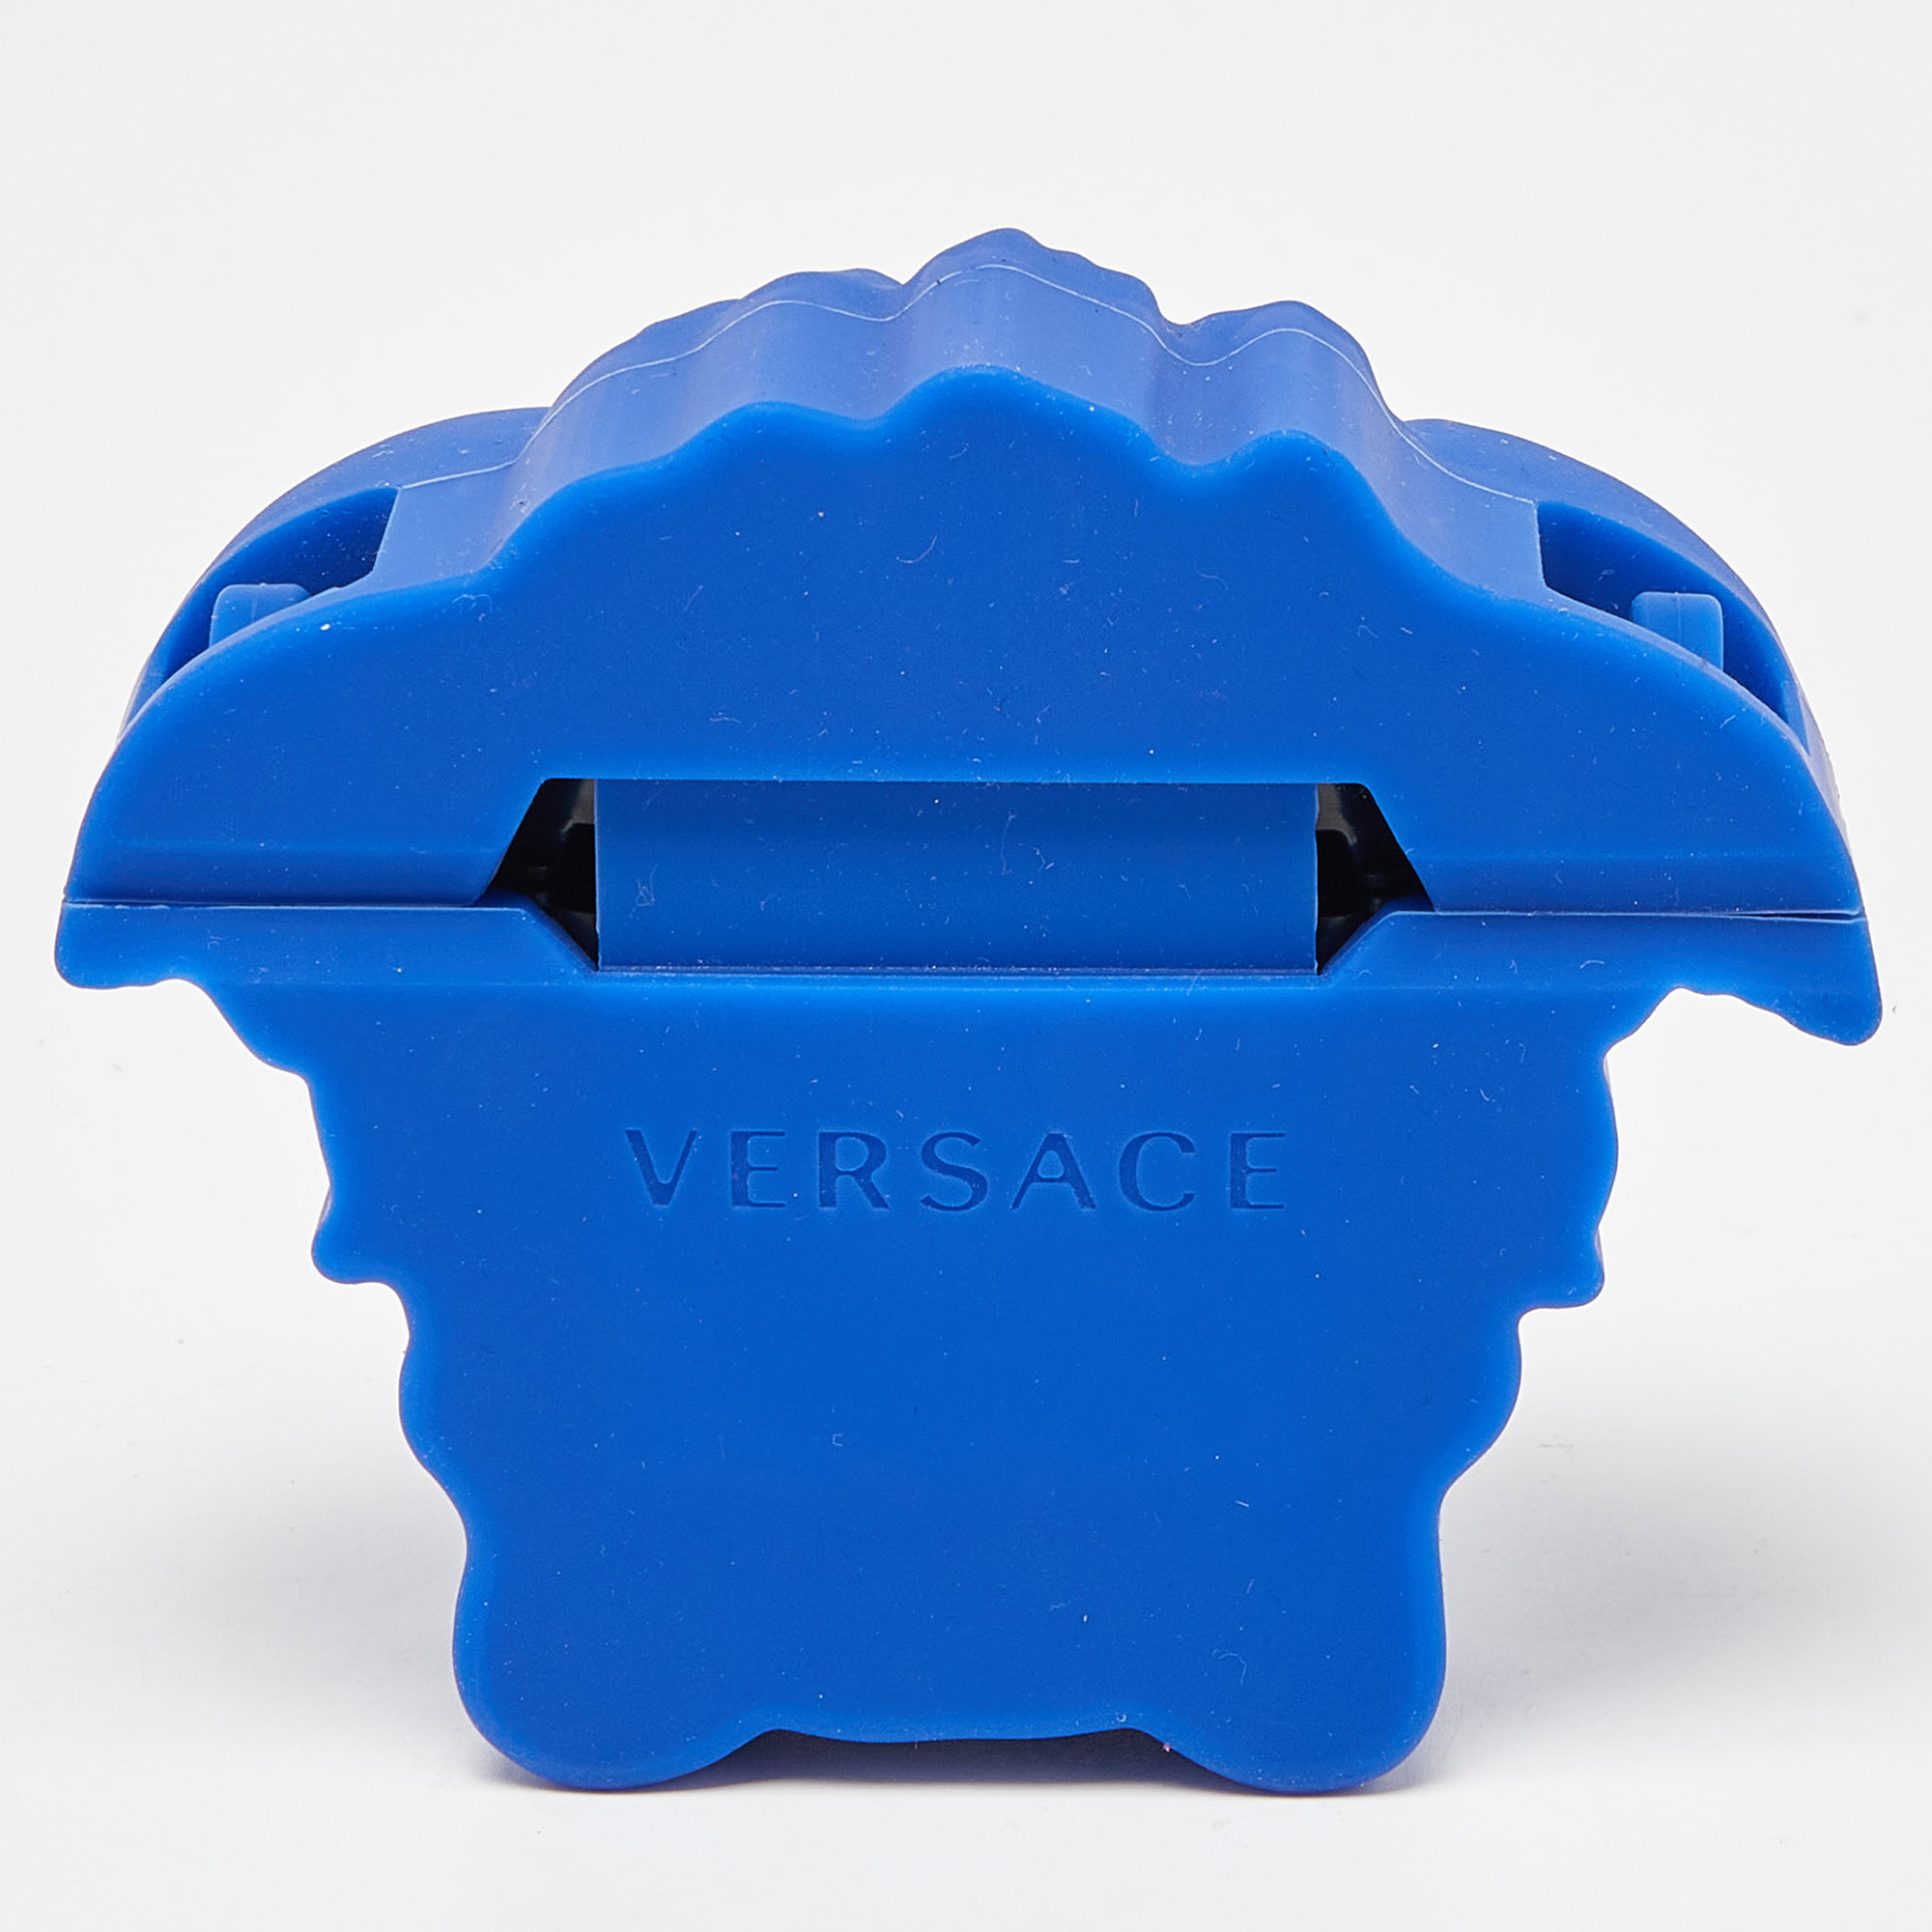 Versace Blue Rubber La Medusa Airpods Case